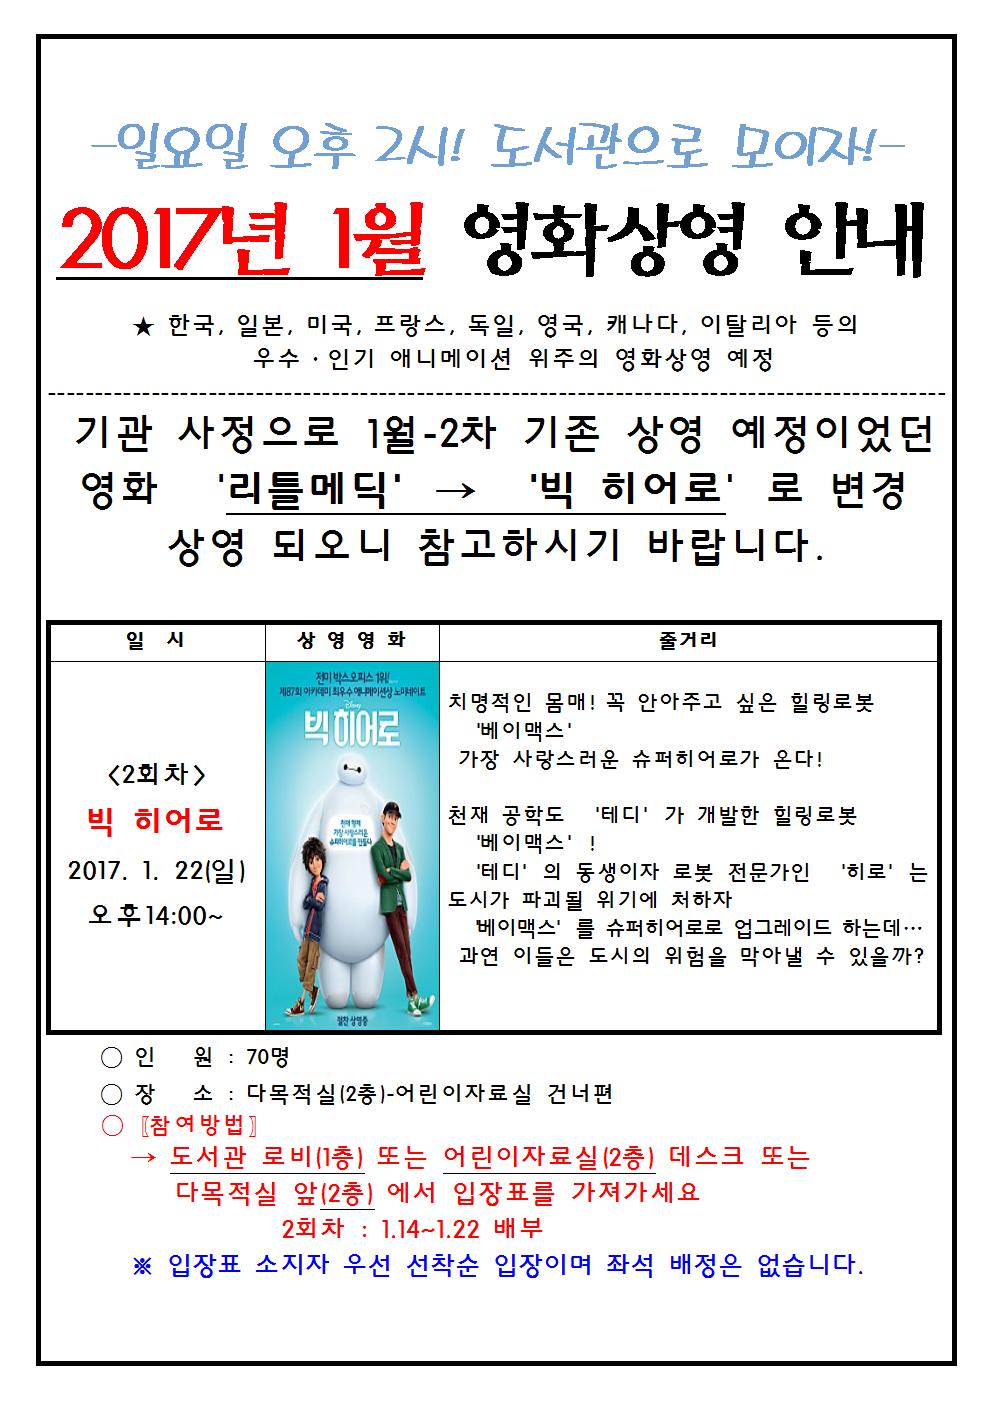 청주오창도서관 주말영화상영 1월-2차 상영영화 변경 알림